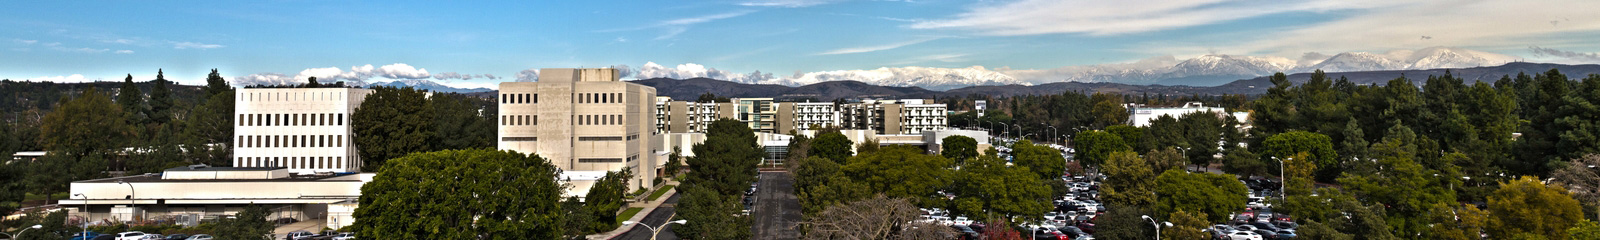 image of bridge campus